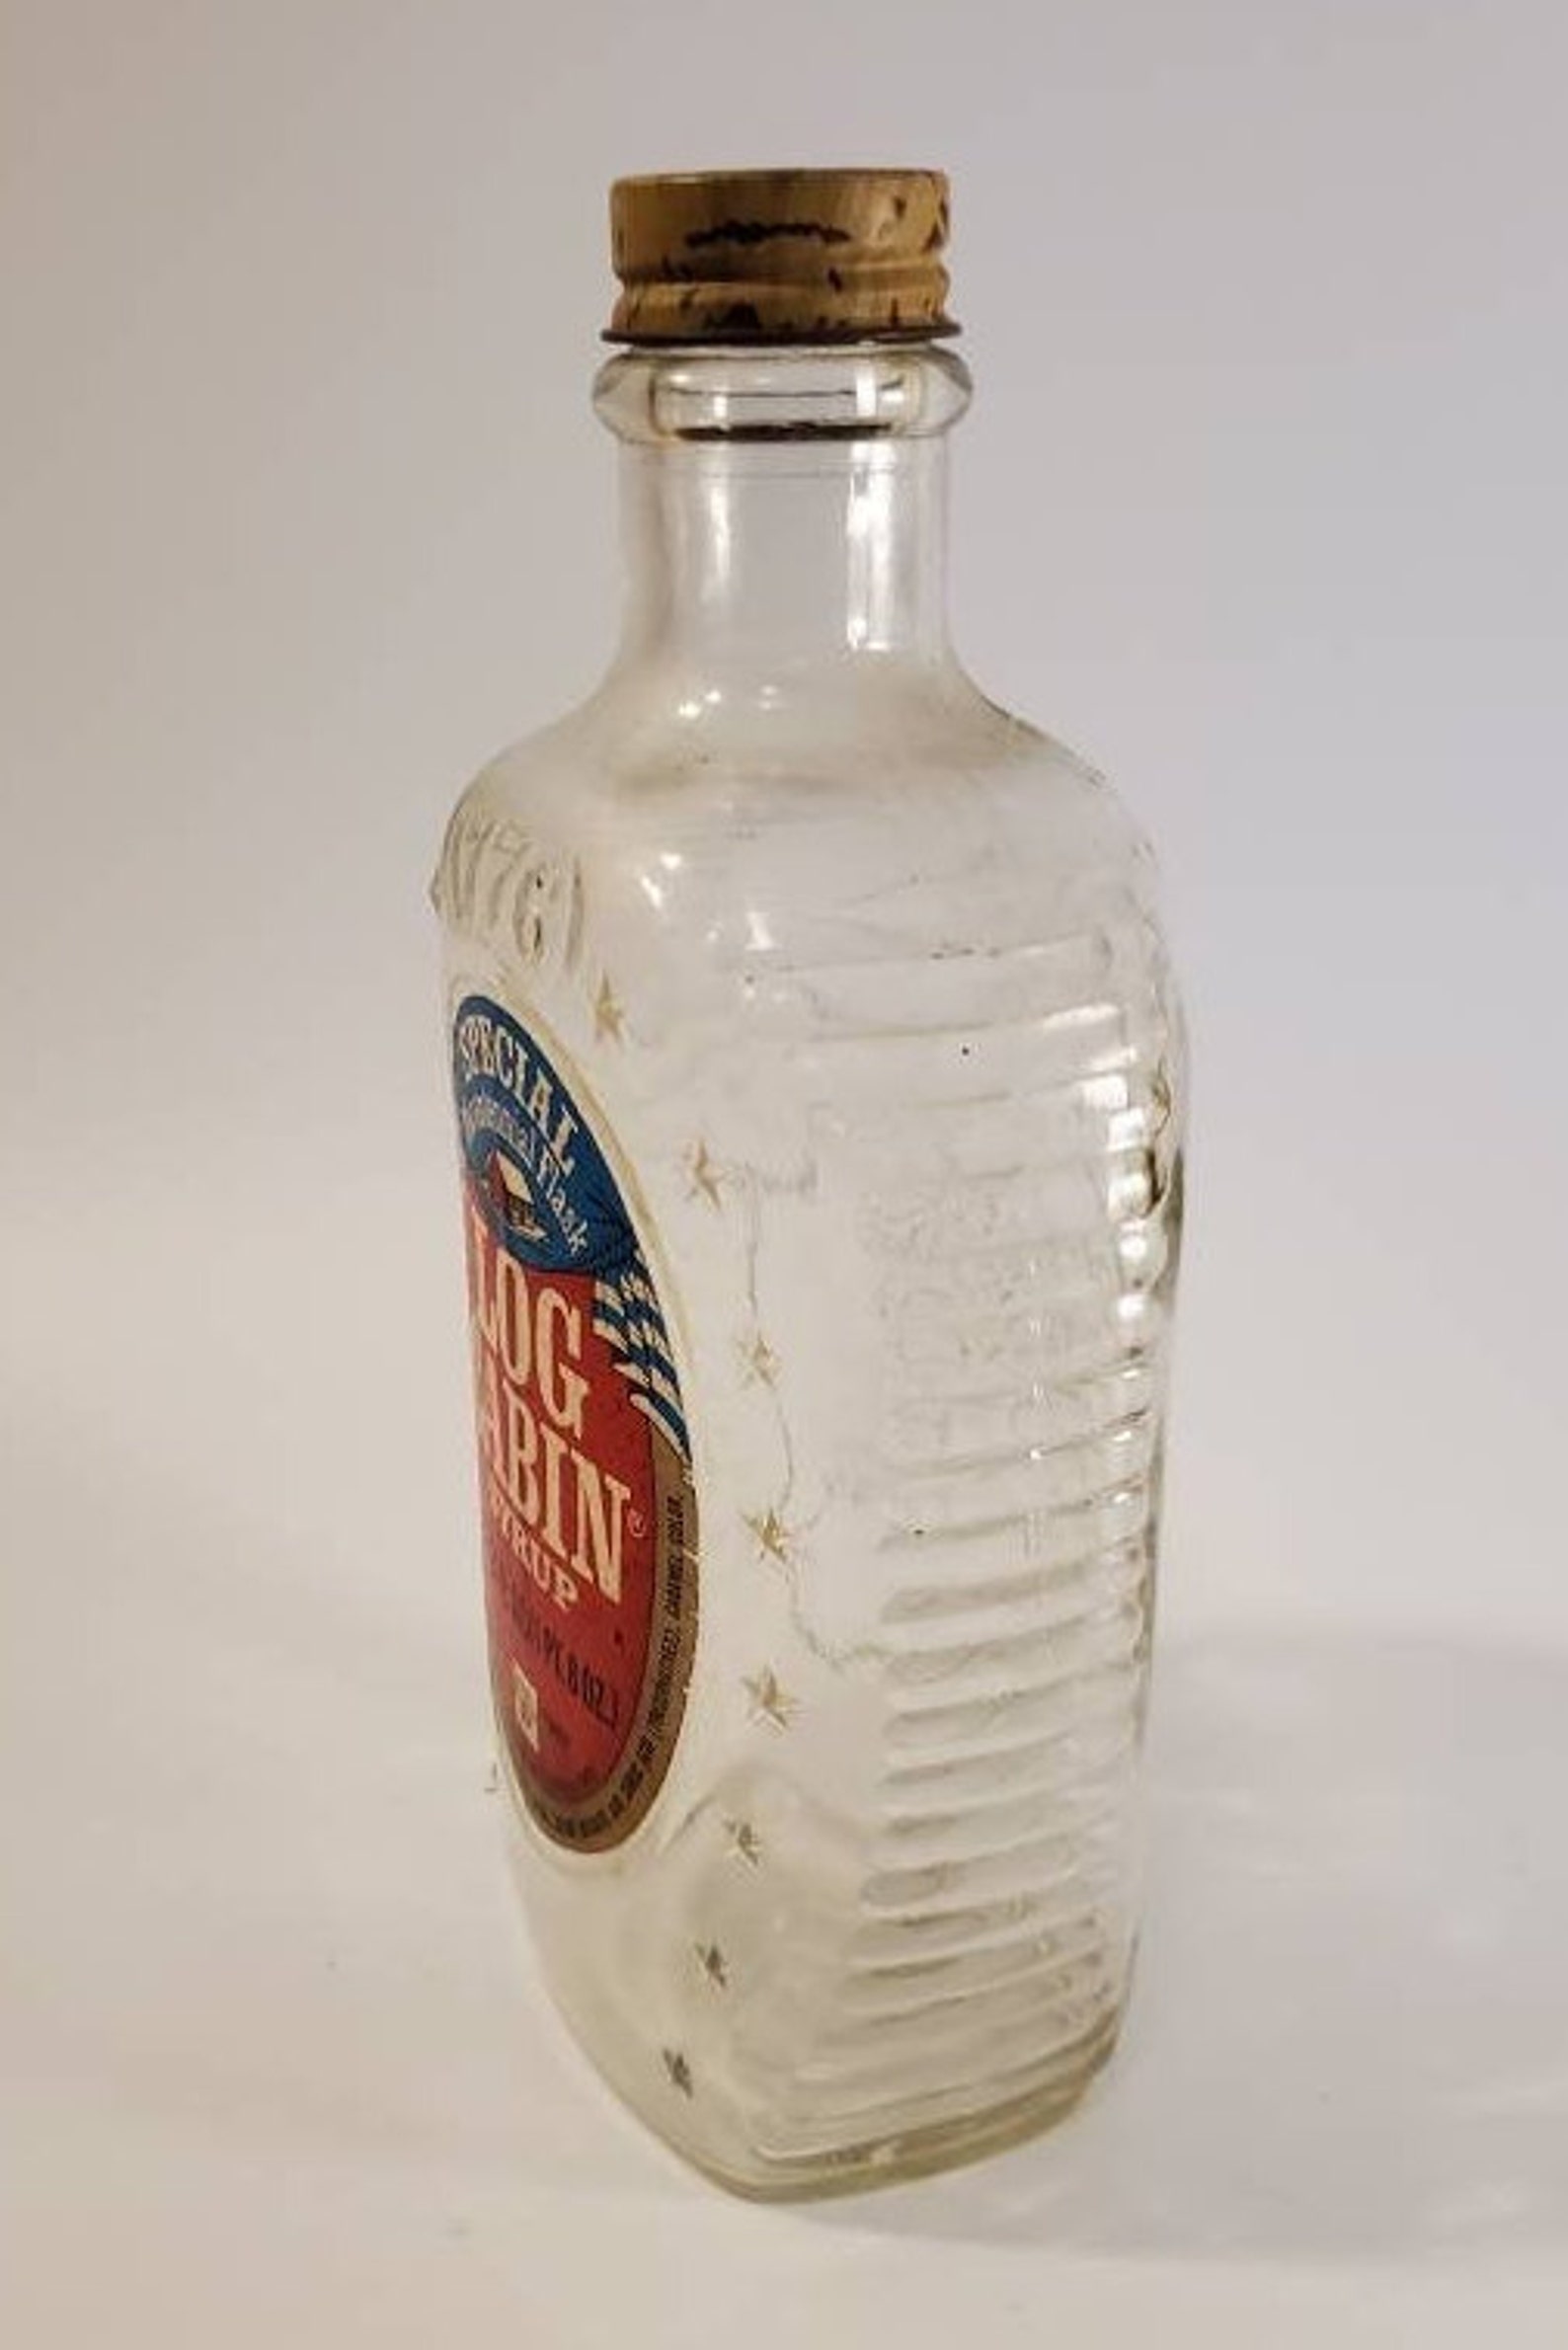 Log Cabin Syrup Special Bicentennial Flask Vintage Bottle - Etsy